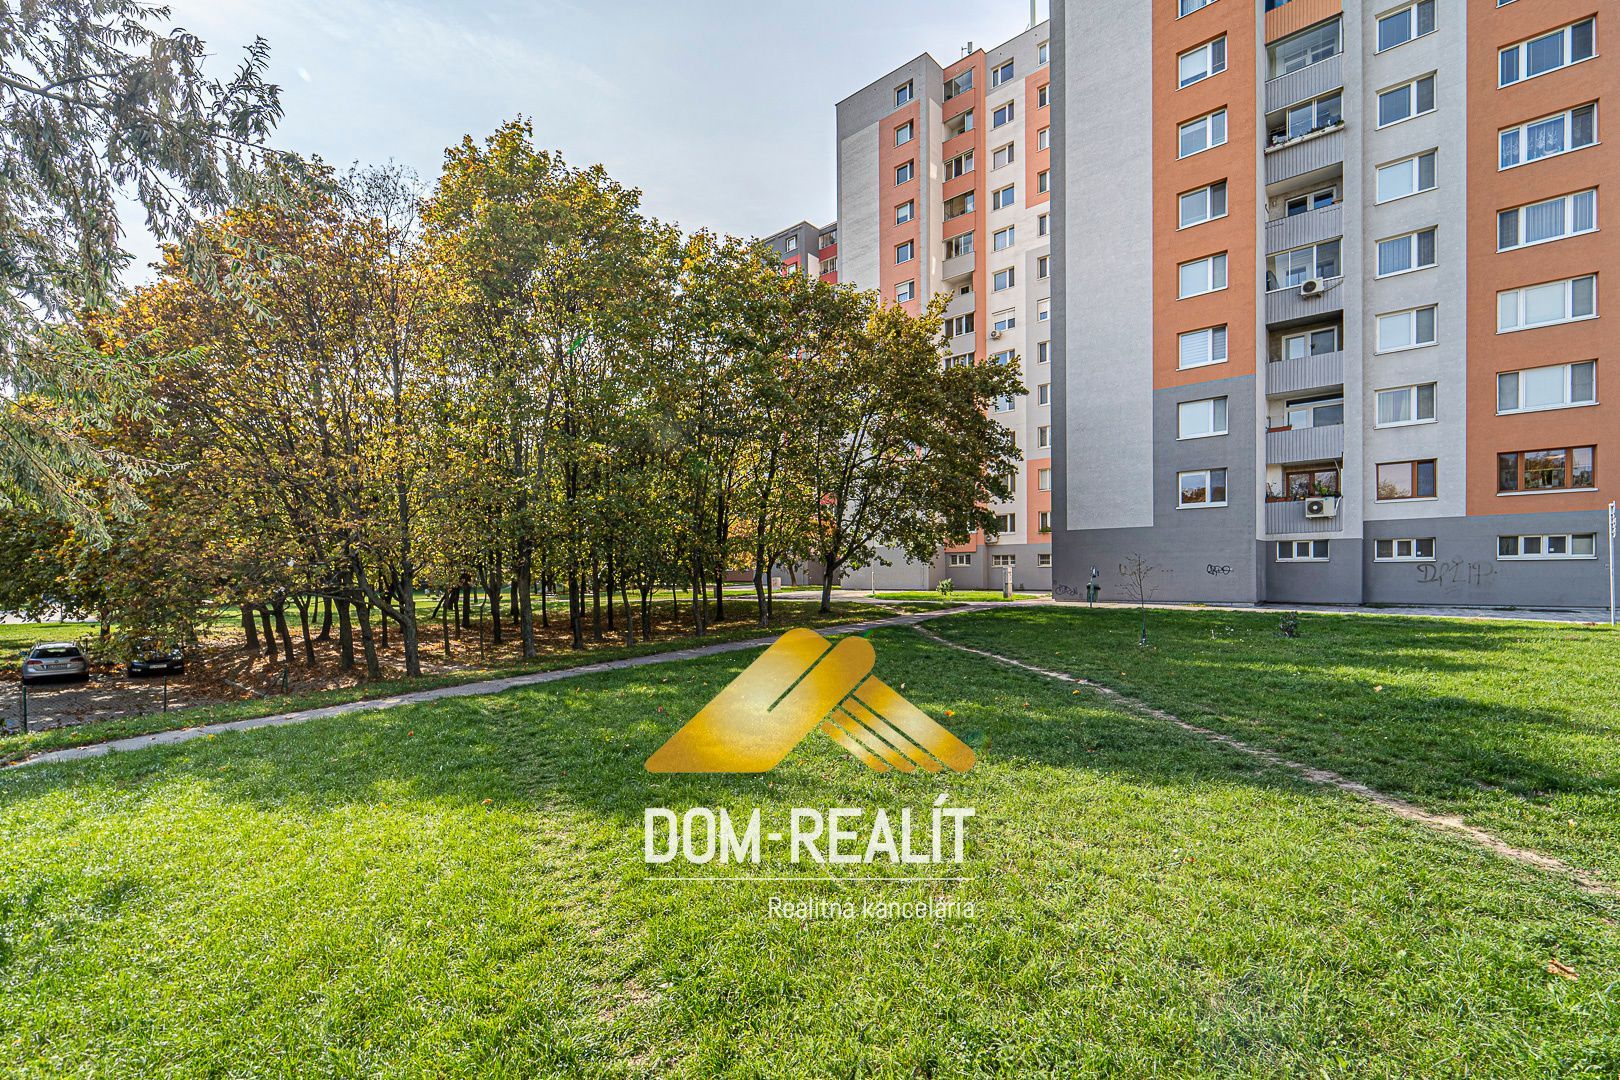 Nehnutelnost DOM-REALÍT ponúka na predaj 3 izbový byt, Petržalka, Budatínska ulica